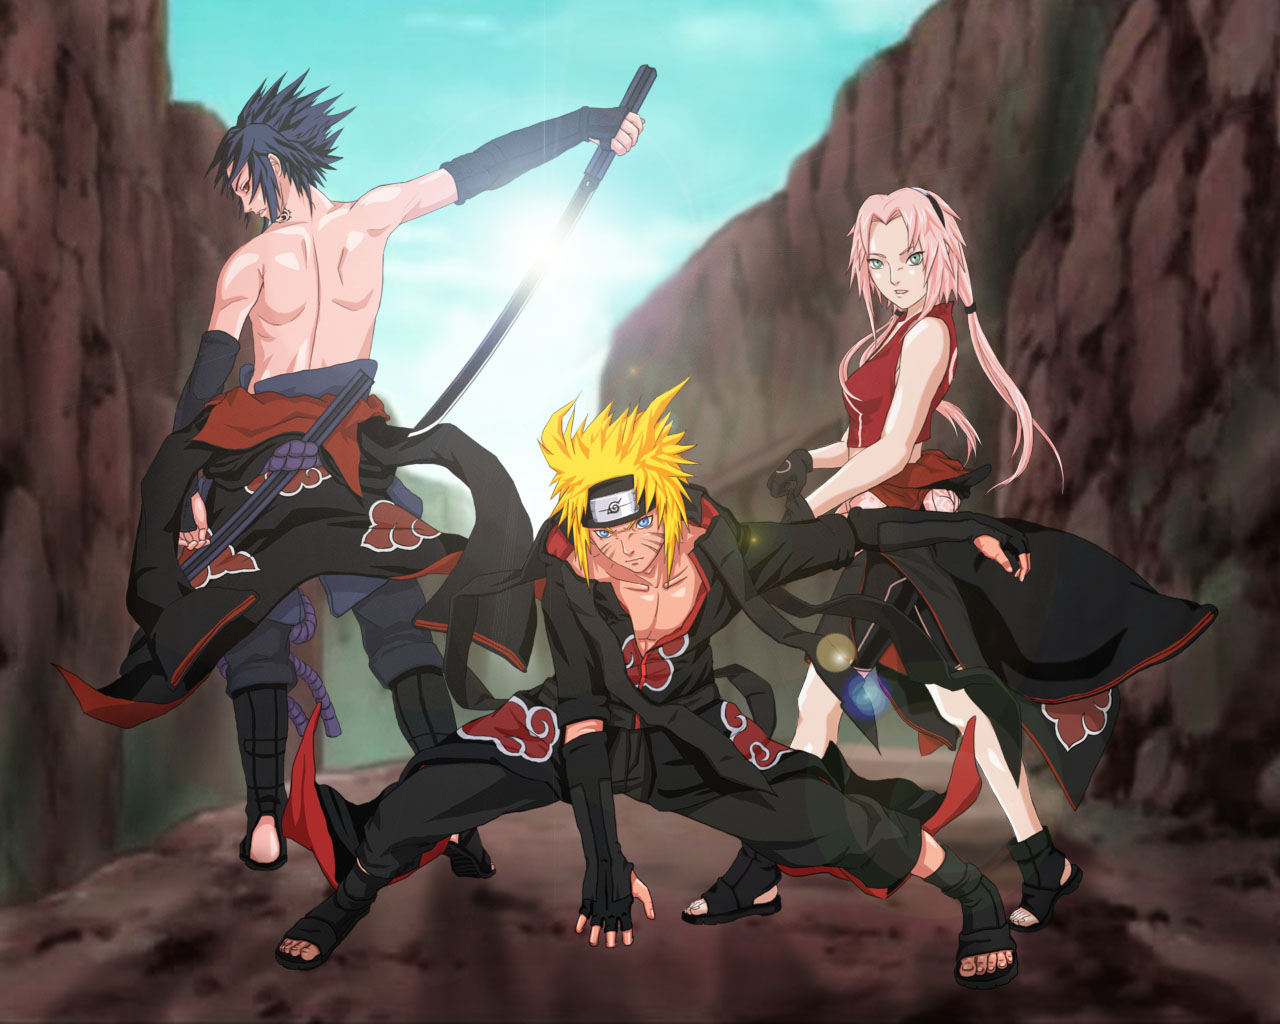 Sasuke, Naruto, and Sakura in Akatsuki